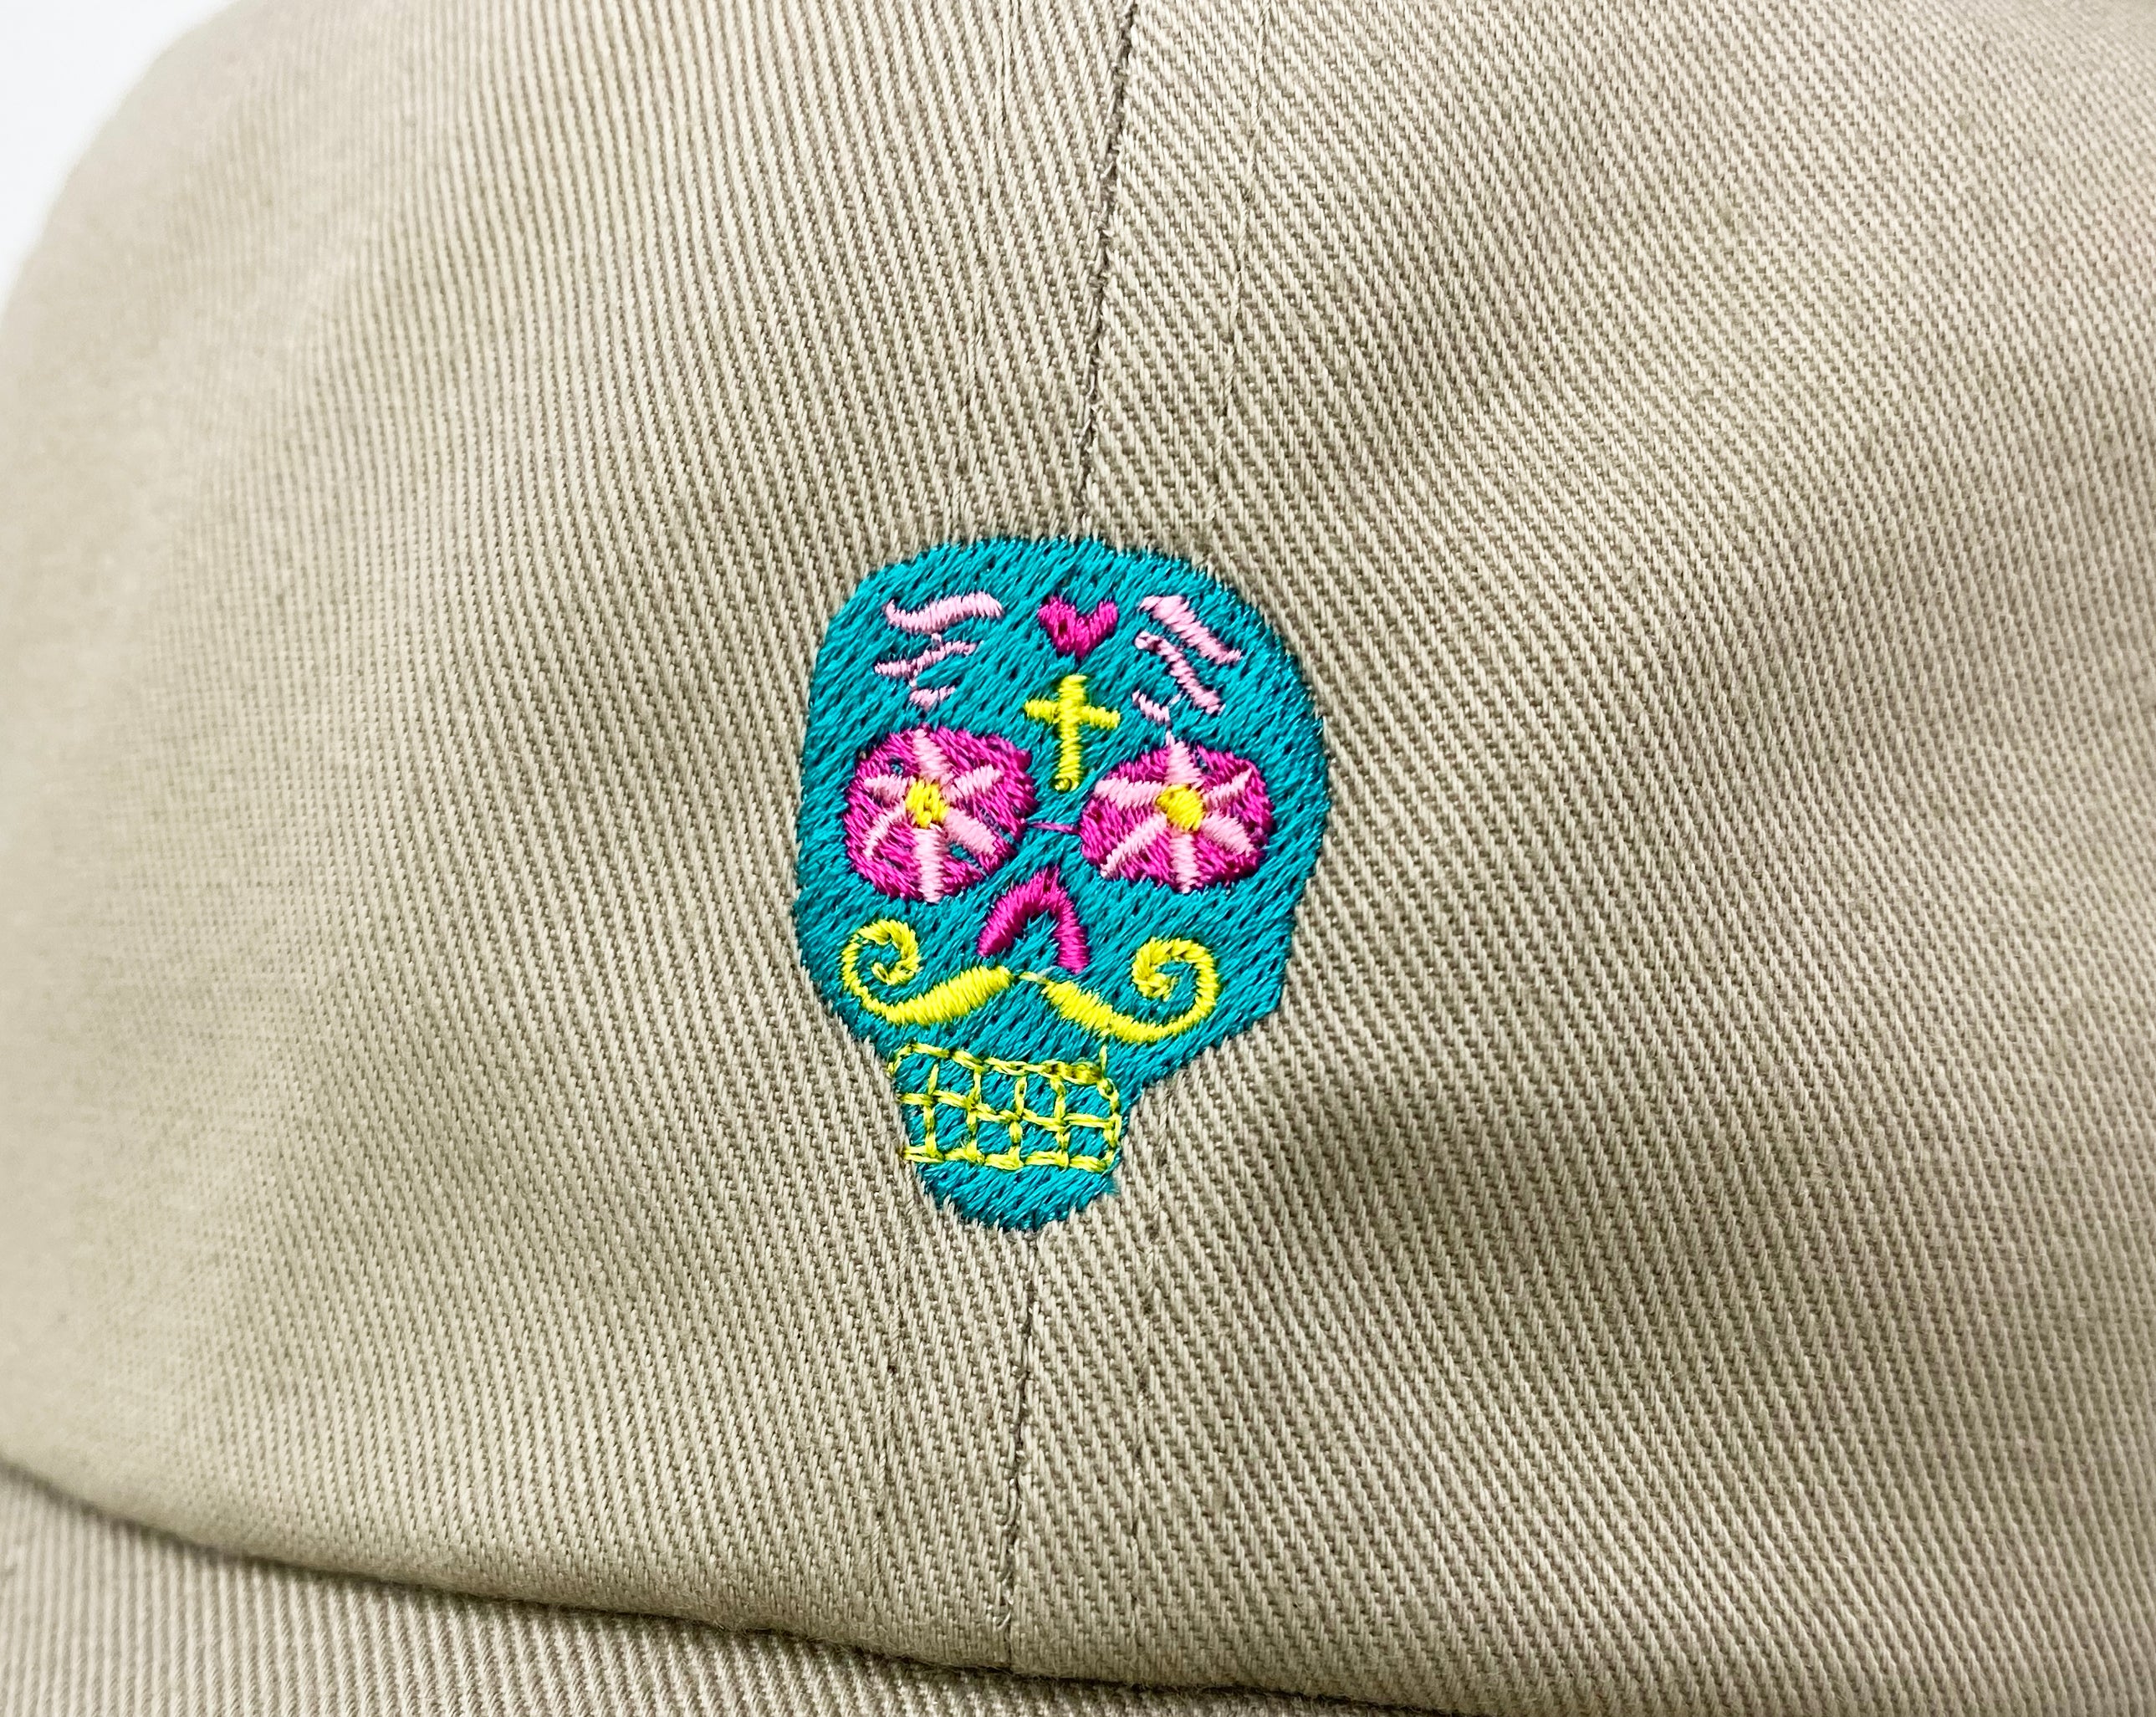 MEXICO CALAVERA CAP